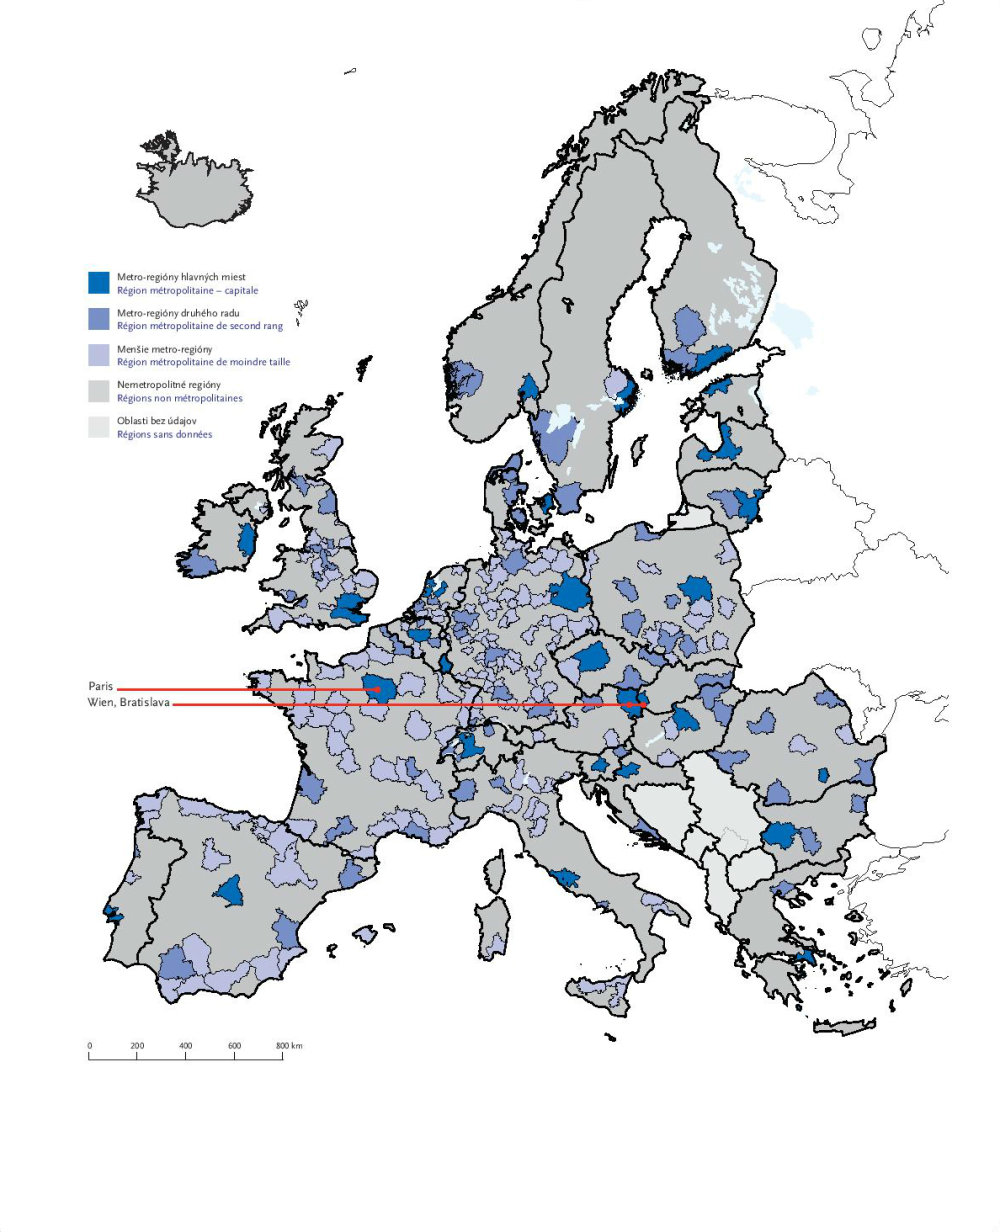 Metro-regióny európskych miest